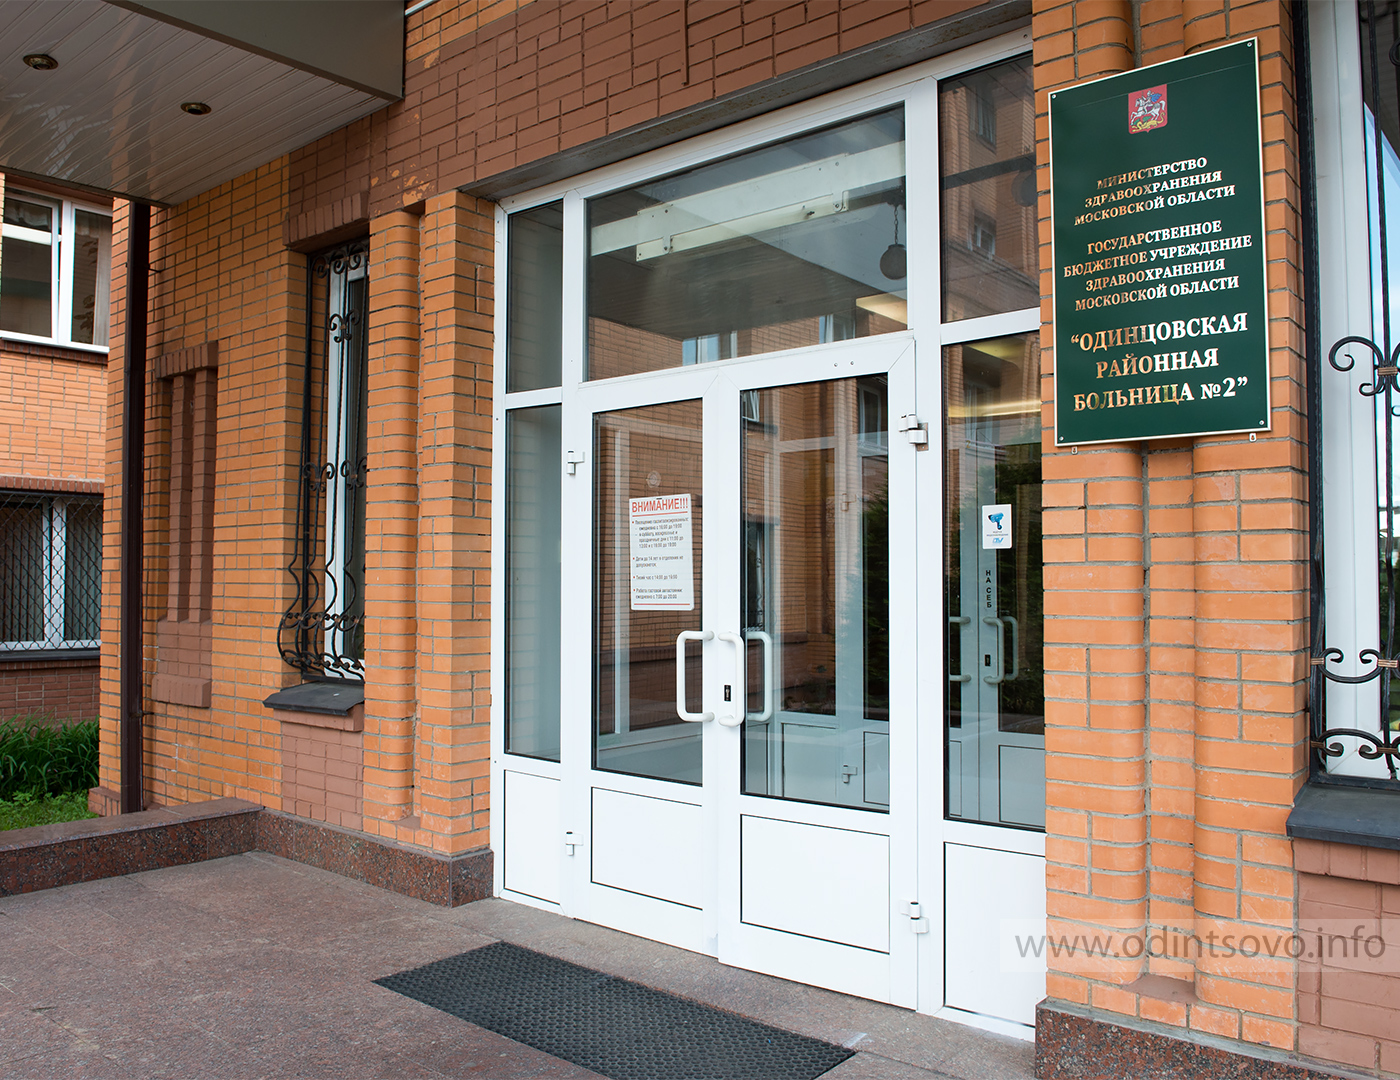 Одинцовский районный суд московской области